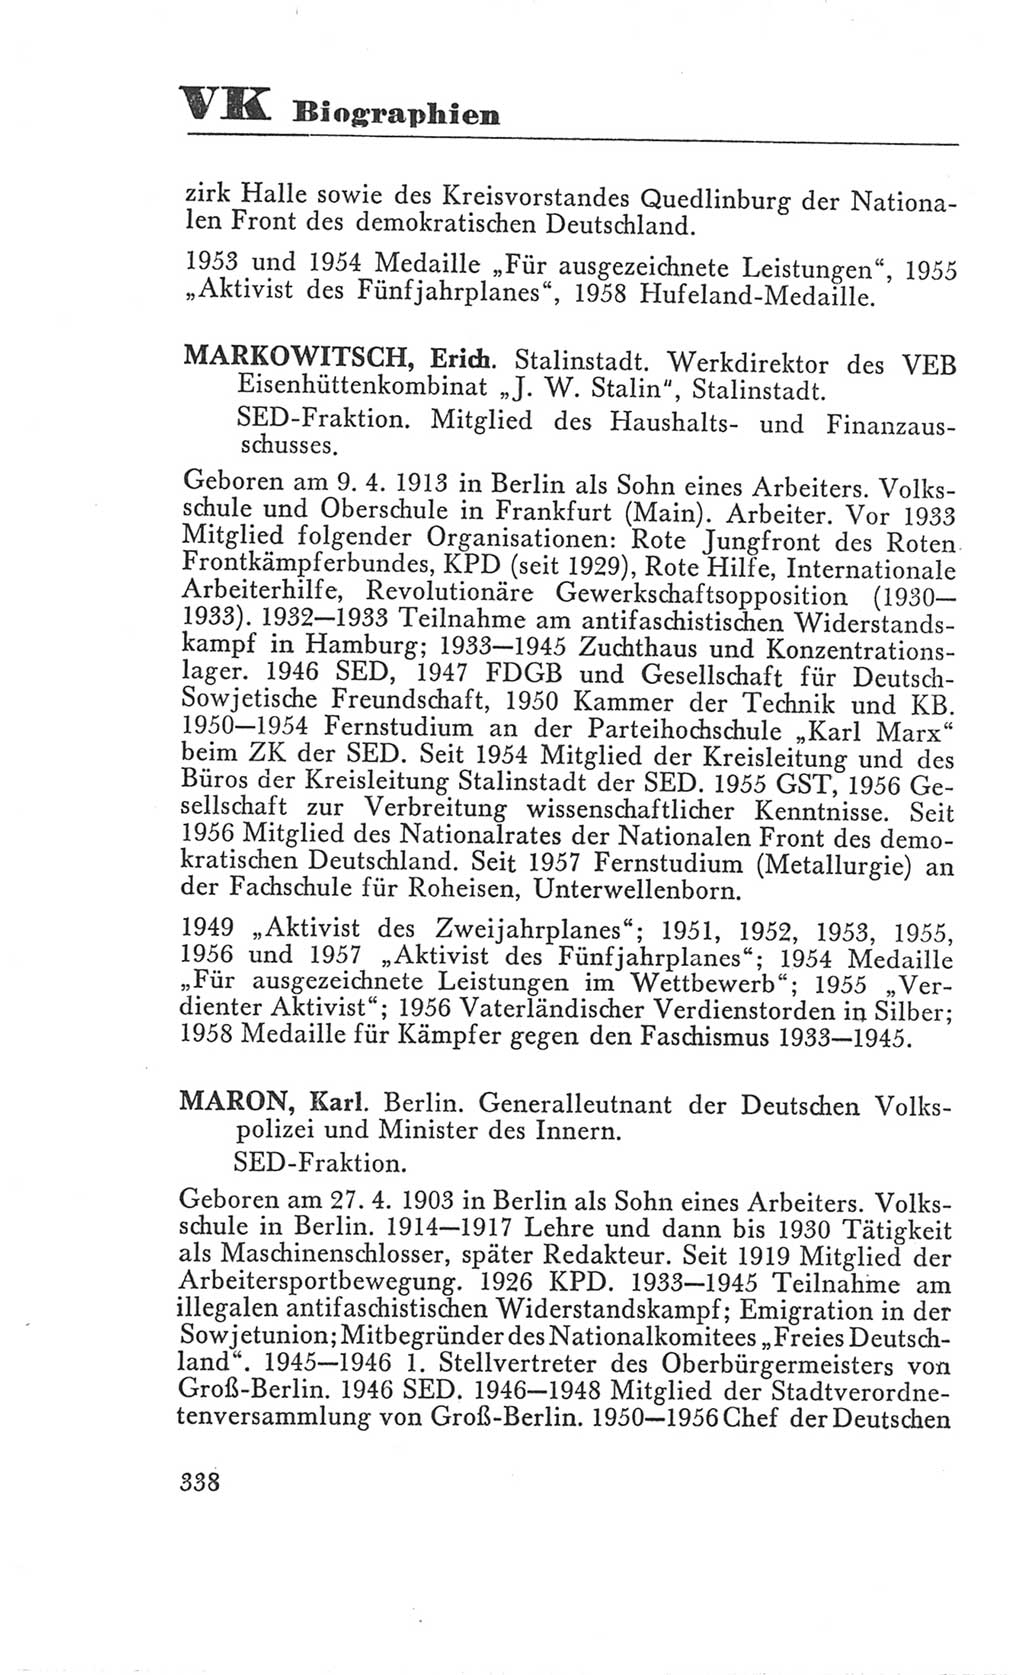 Handbuch der Volkskammer (VK) der Deutschen Demokratischen Republik (DDR), 3. Wahlperiode 1958-1963, Seite 338 (Hdb. VK. DDR 3. WP. 1958-1963, S. 338)